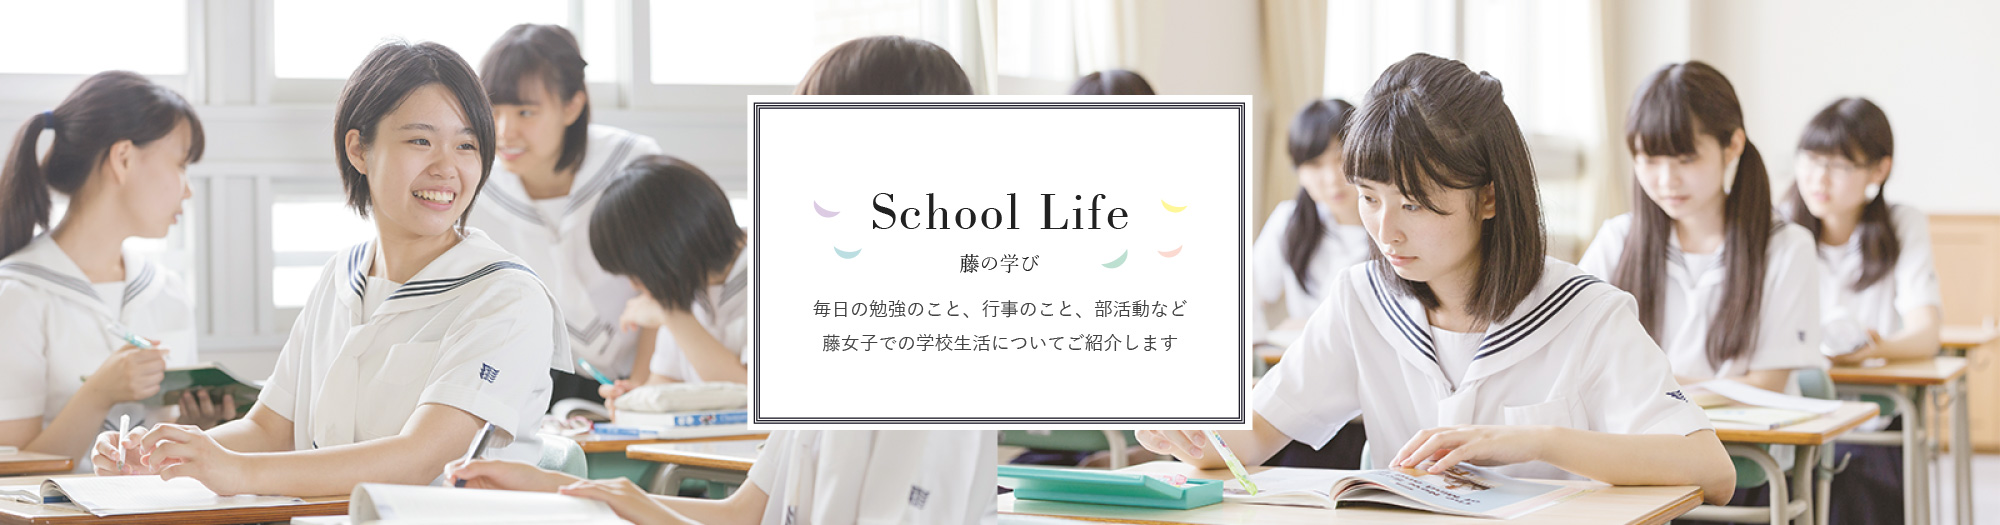 School Life 藤の学び 毎日の勉強のこと、行事のこと、部活動など
藤女子での学校生活についてご紹介します